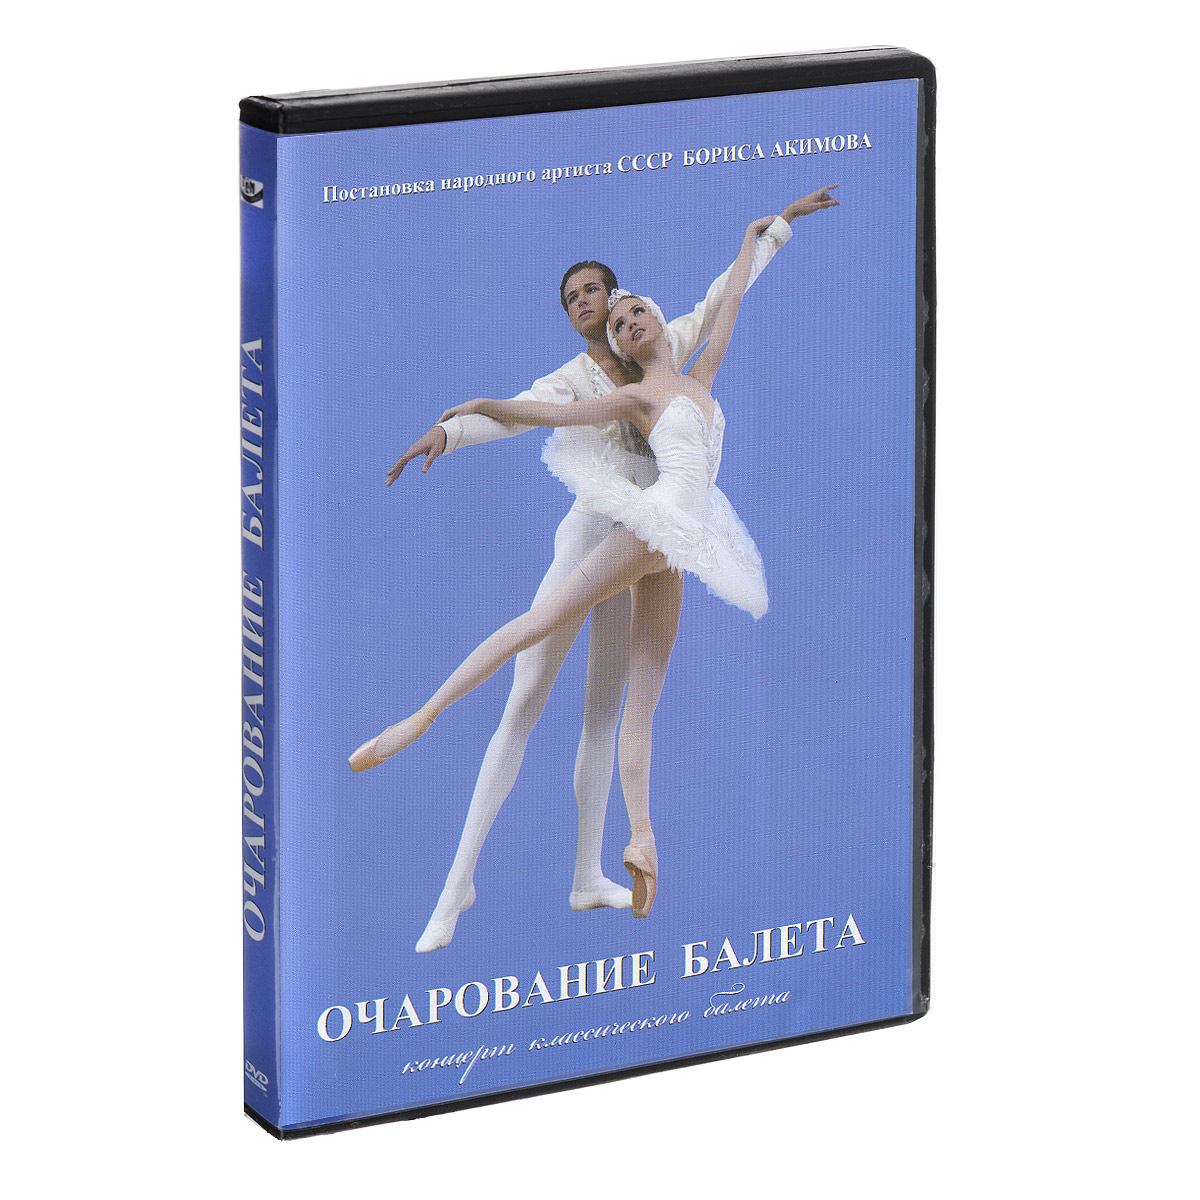 Очарование балета: Концерт классического балета